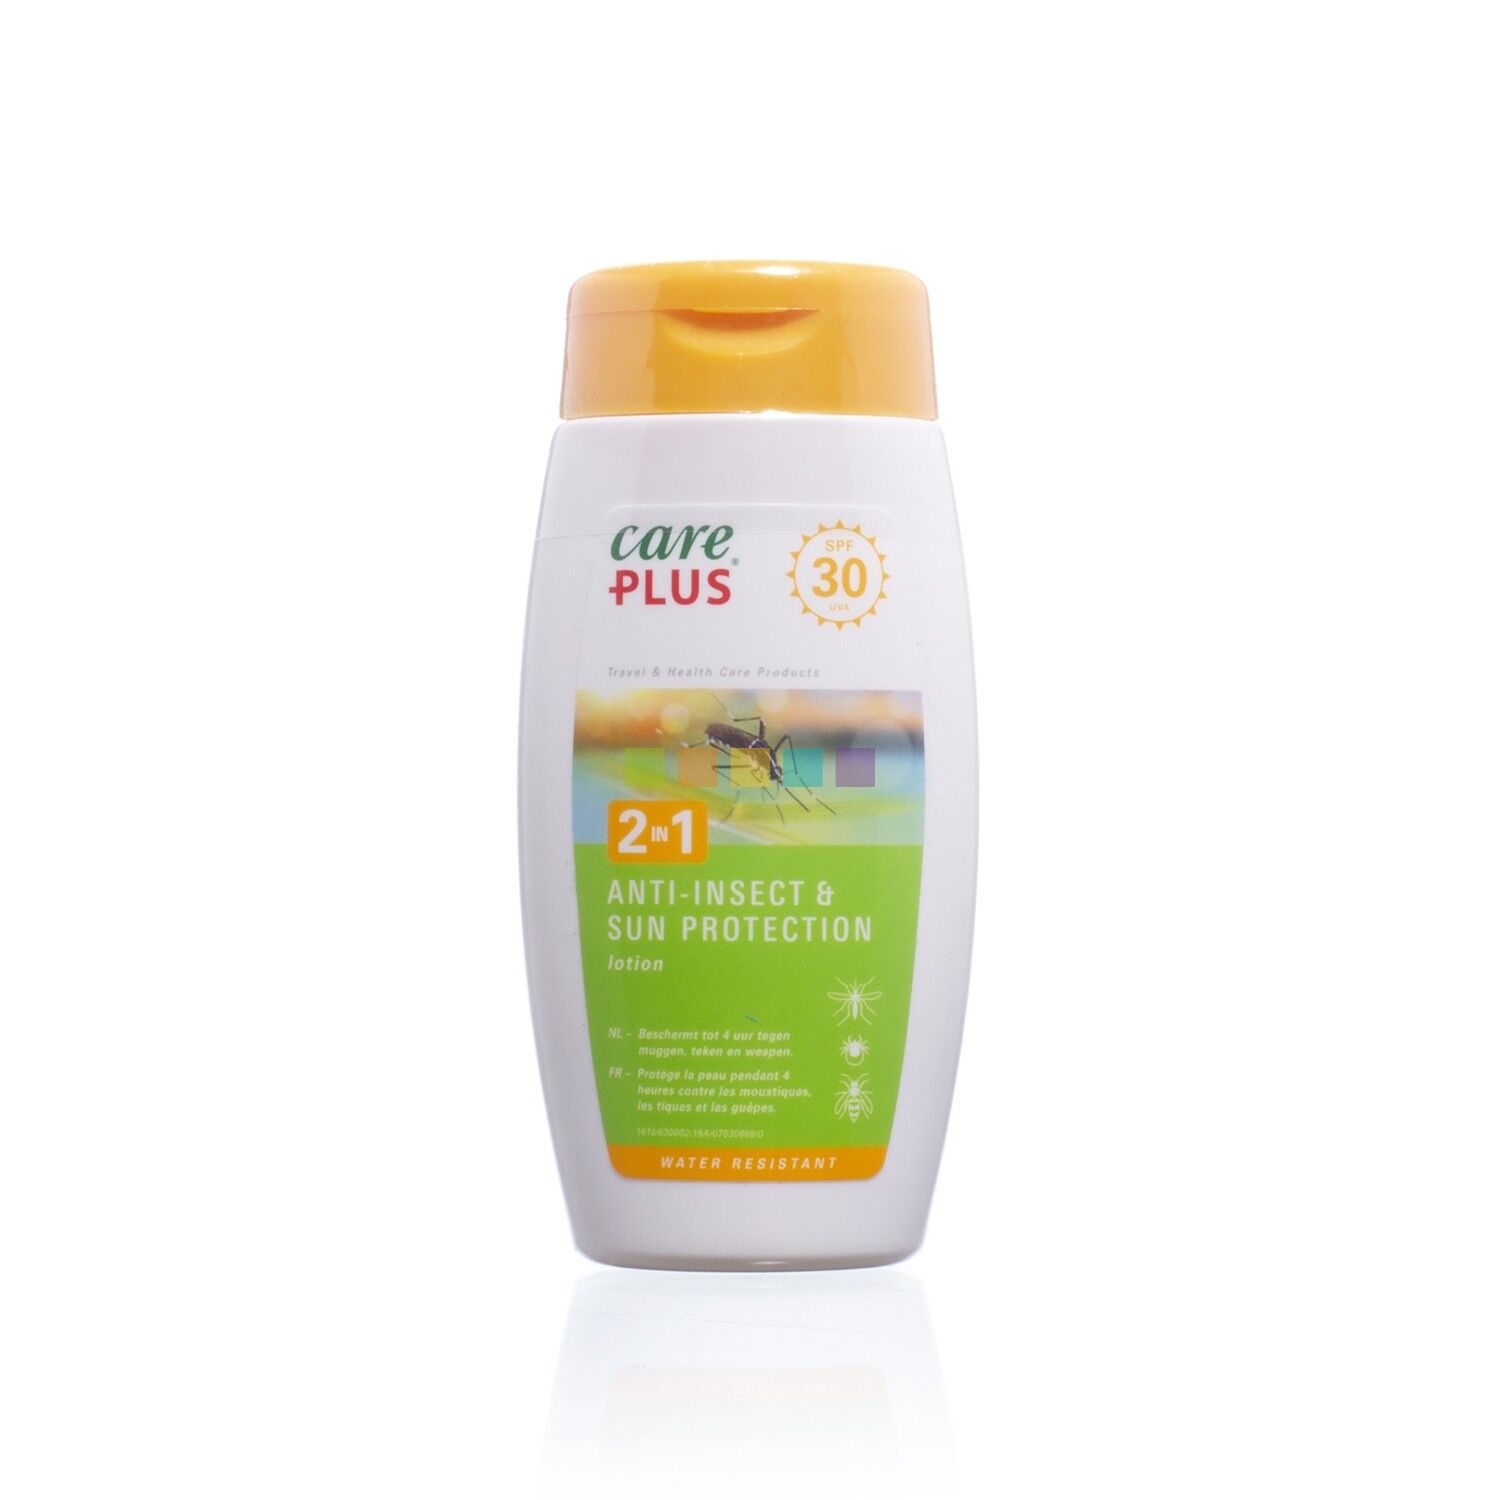 Care Plus 2in1 Anti-Insect & Sun Protection Lotion SPF30 - Protezioni contro gli insetti